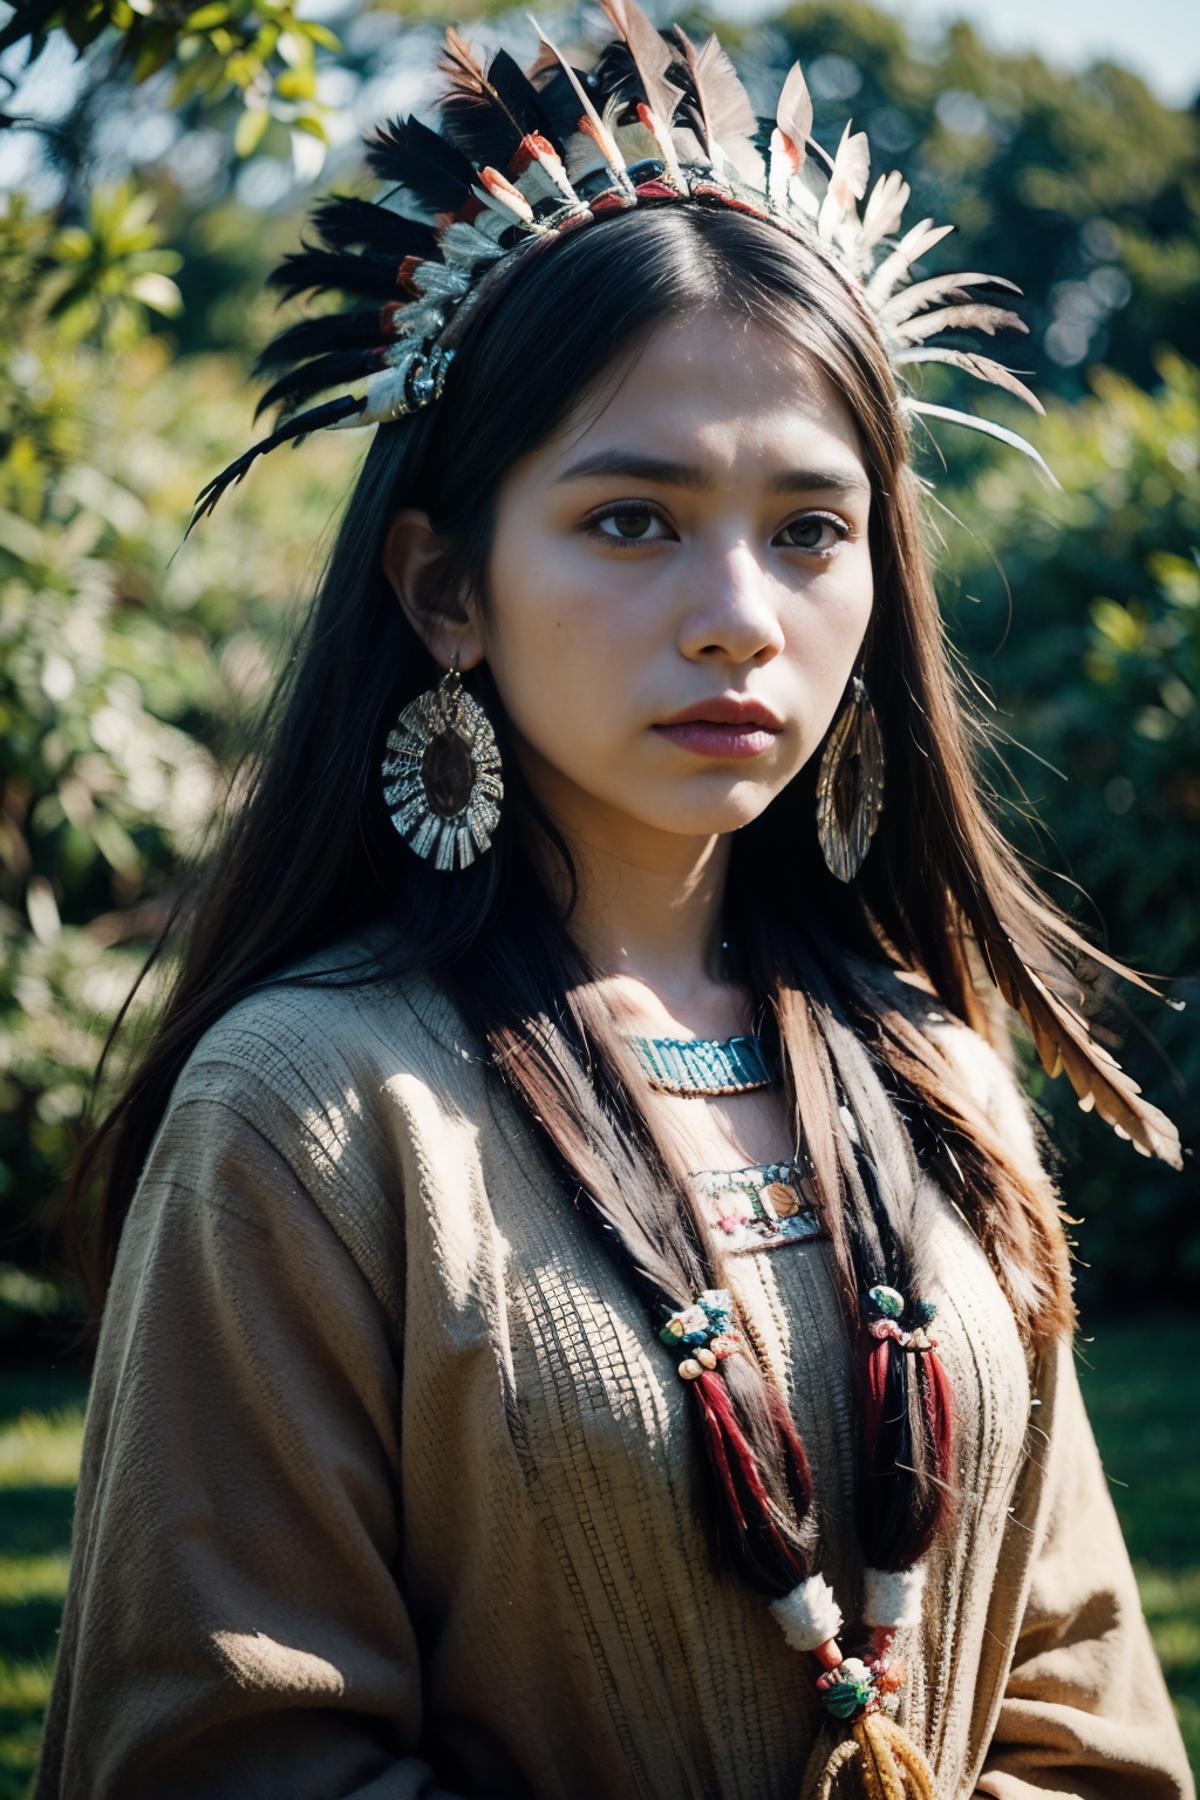 North America Indigenous Mix by Noerman image by Noerman